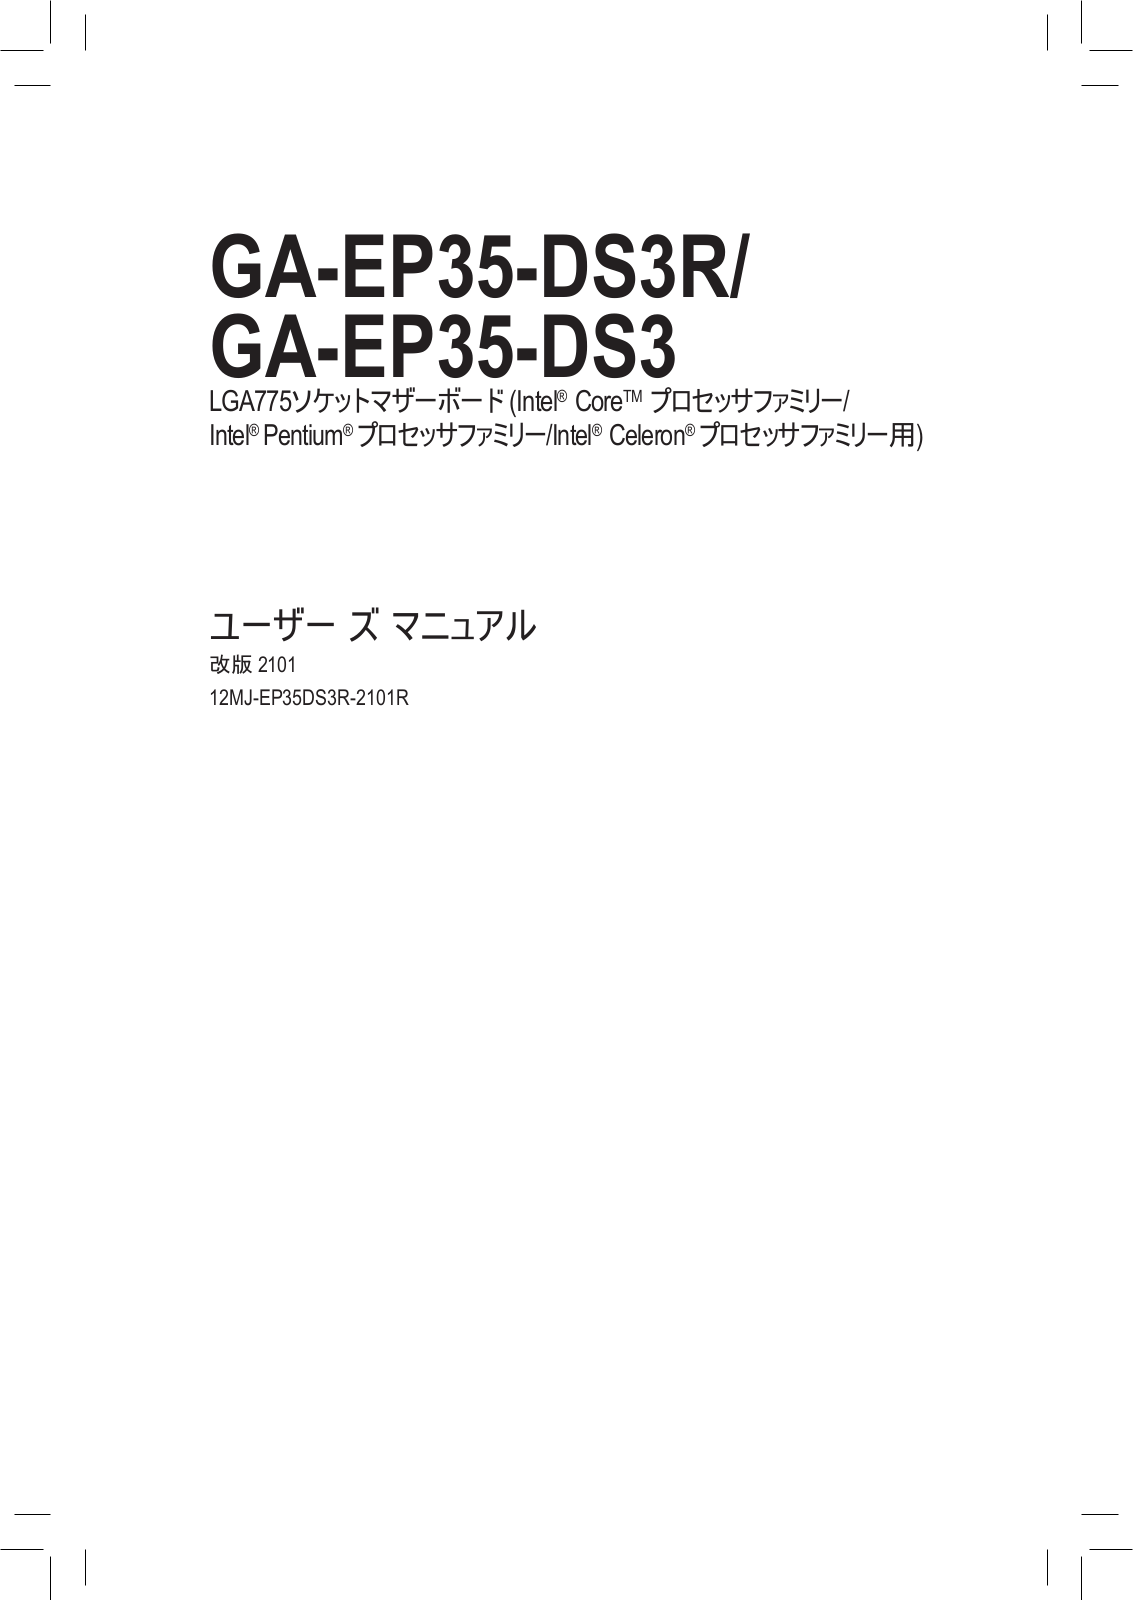 Gigabyte GA-EP35-DS3R, GA-EP35-DS3 Manual